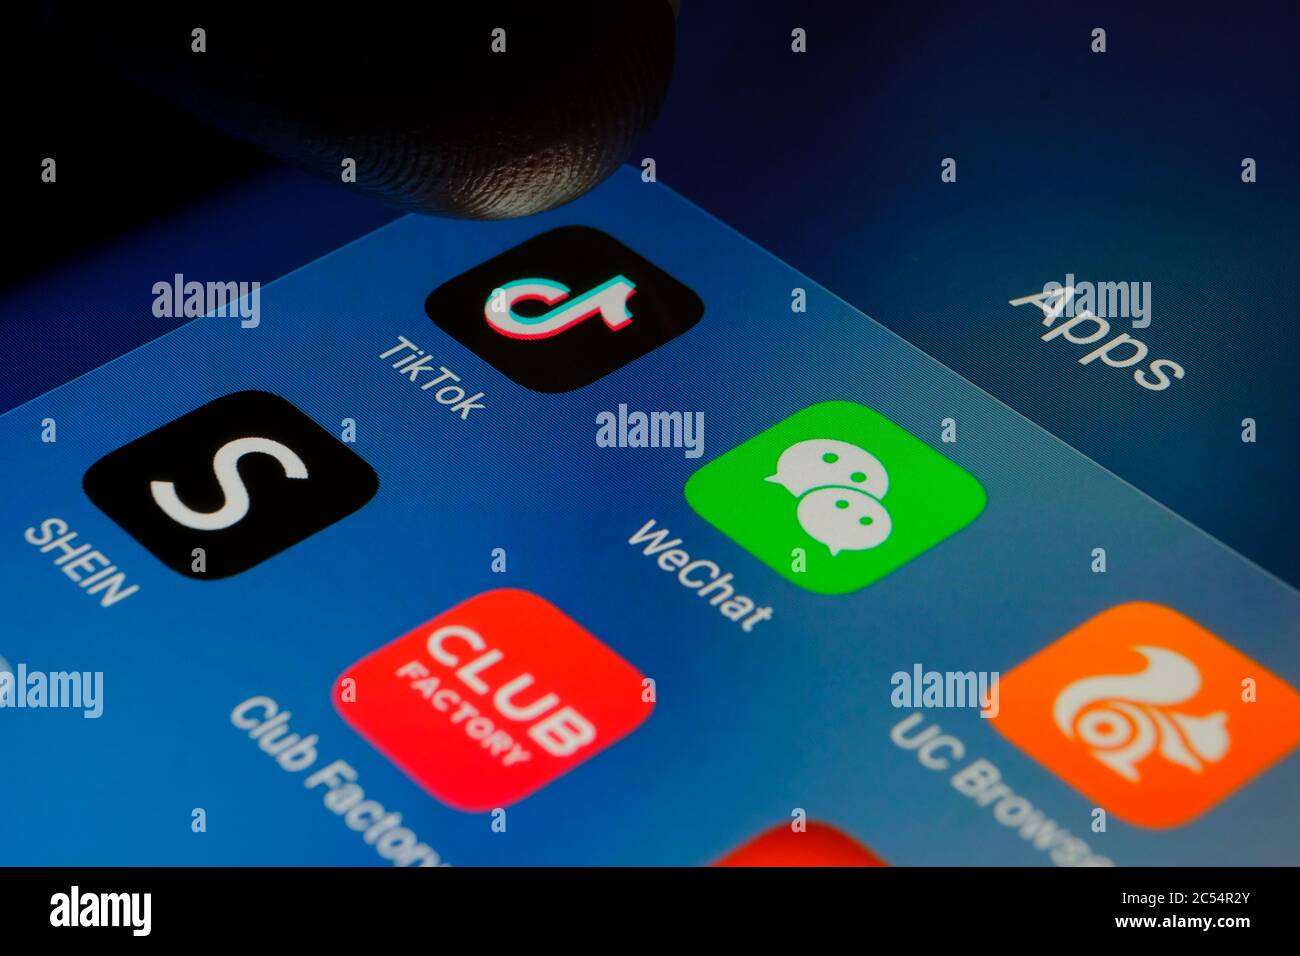 Dedo apuntando a la aplicación Tiktok rodeado por chino WeChat, Club Factory, Shien, UC Browser apps. Foto de las apps chinas que fueron prohibidas en la India Foto de stock